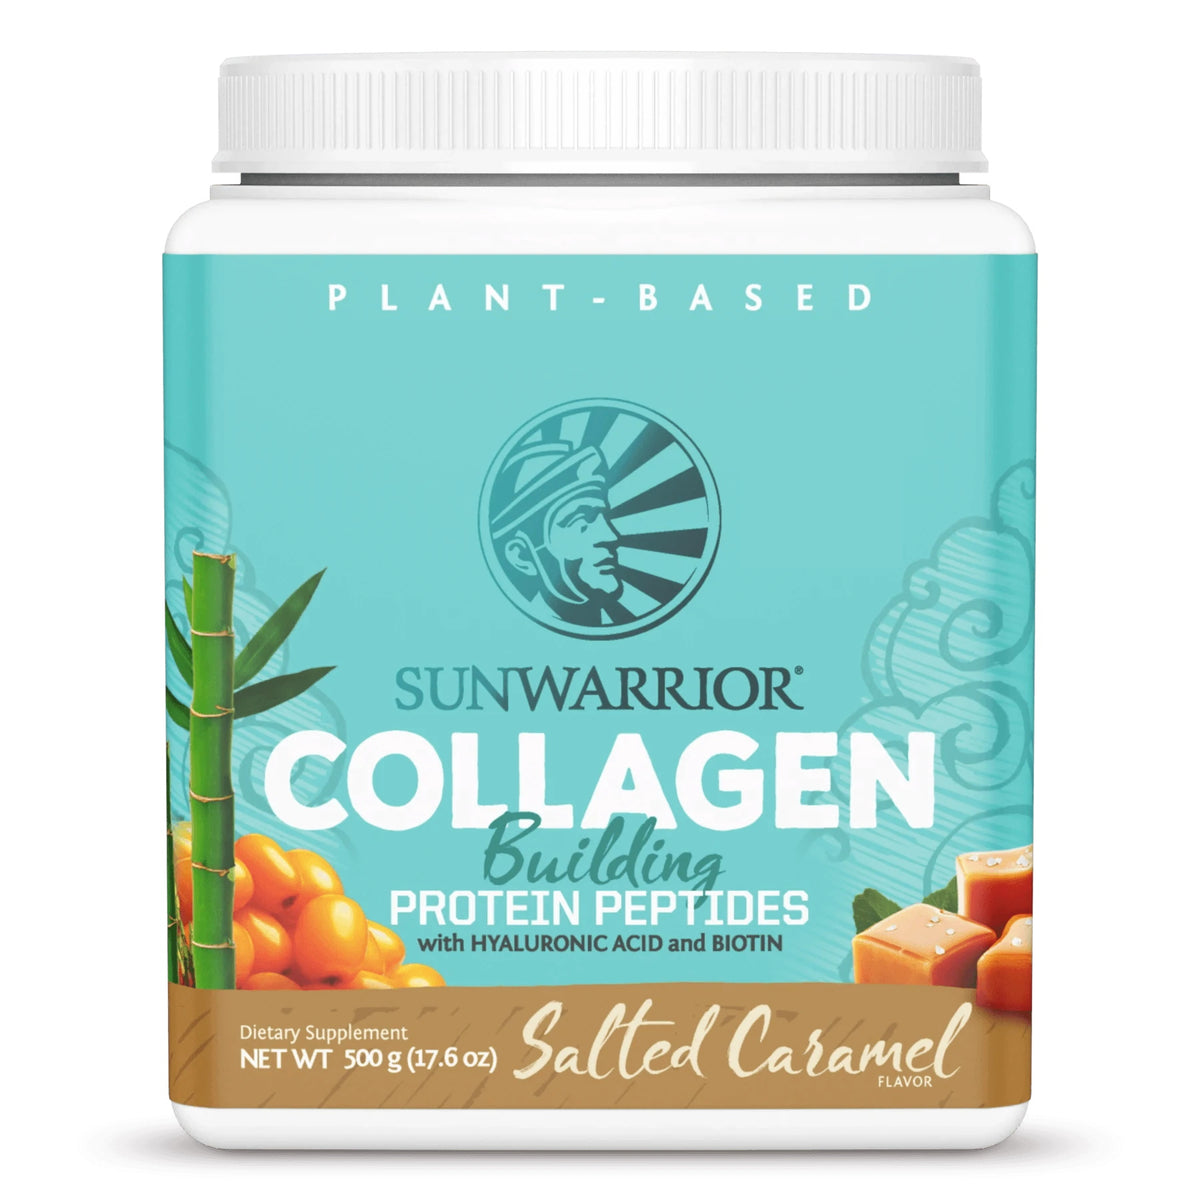 Sunwarrior - Collagen Building Protein Peptides